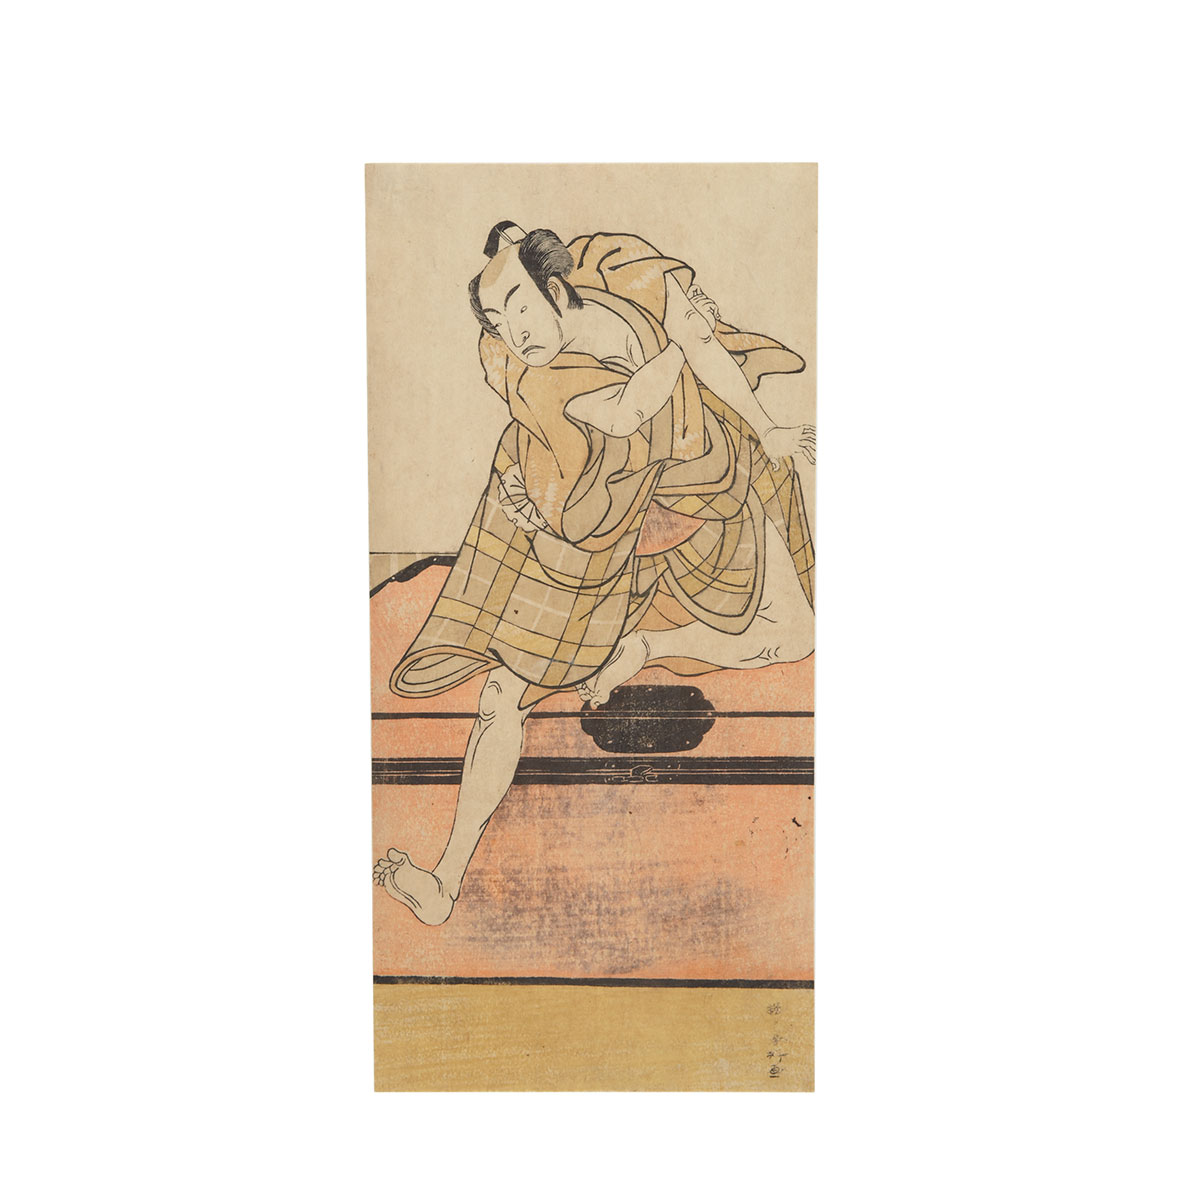 Shunko (1743-1812) MATSUMOTO KOSHIRA